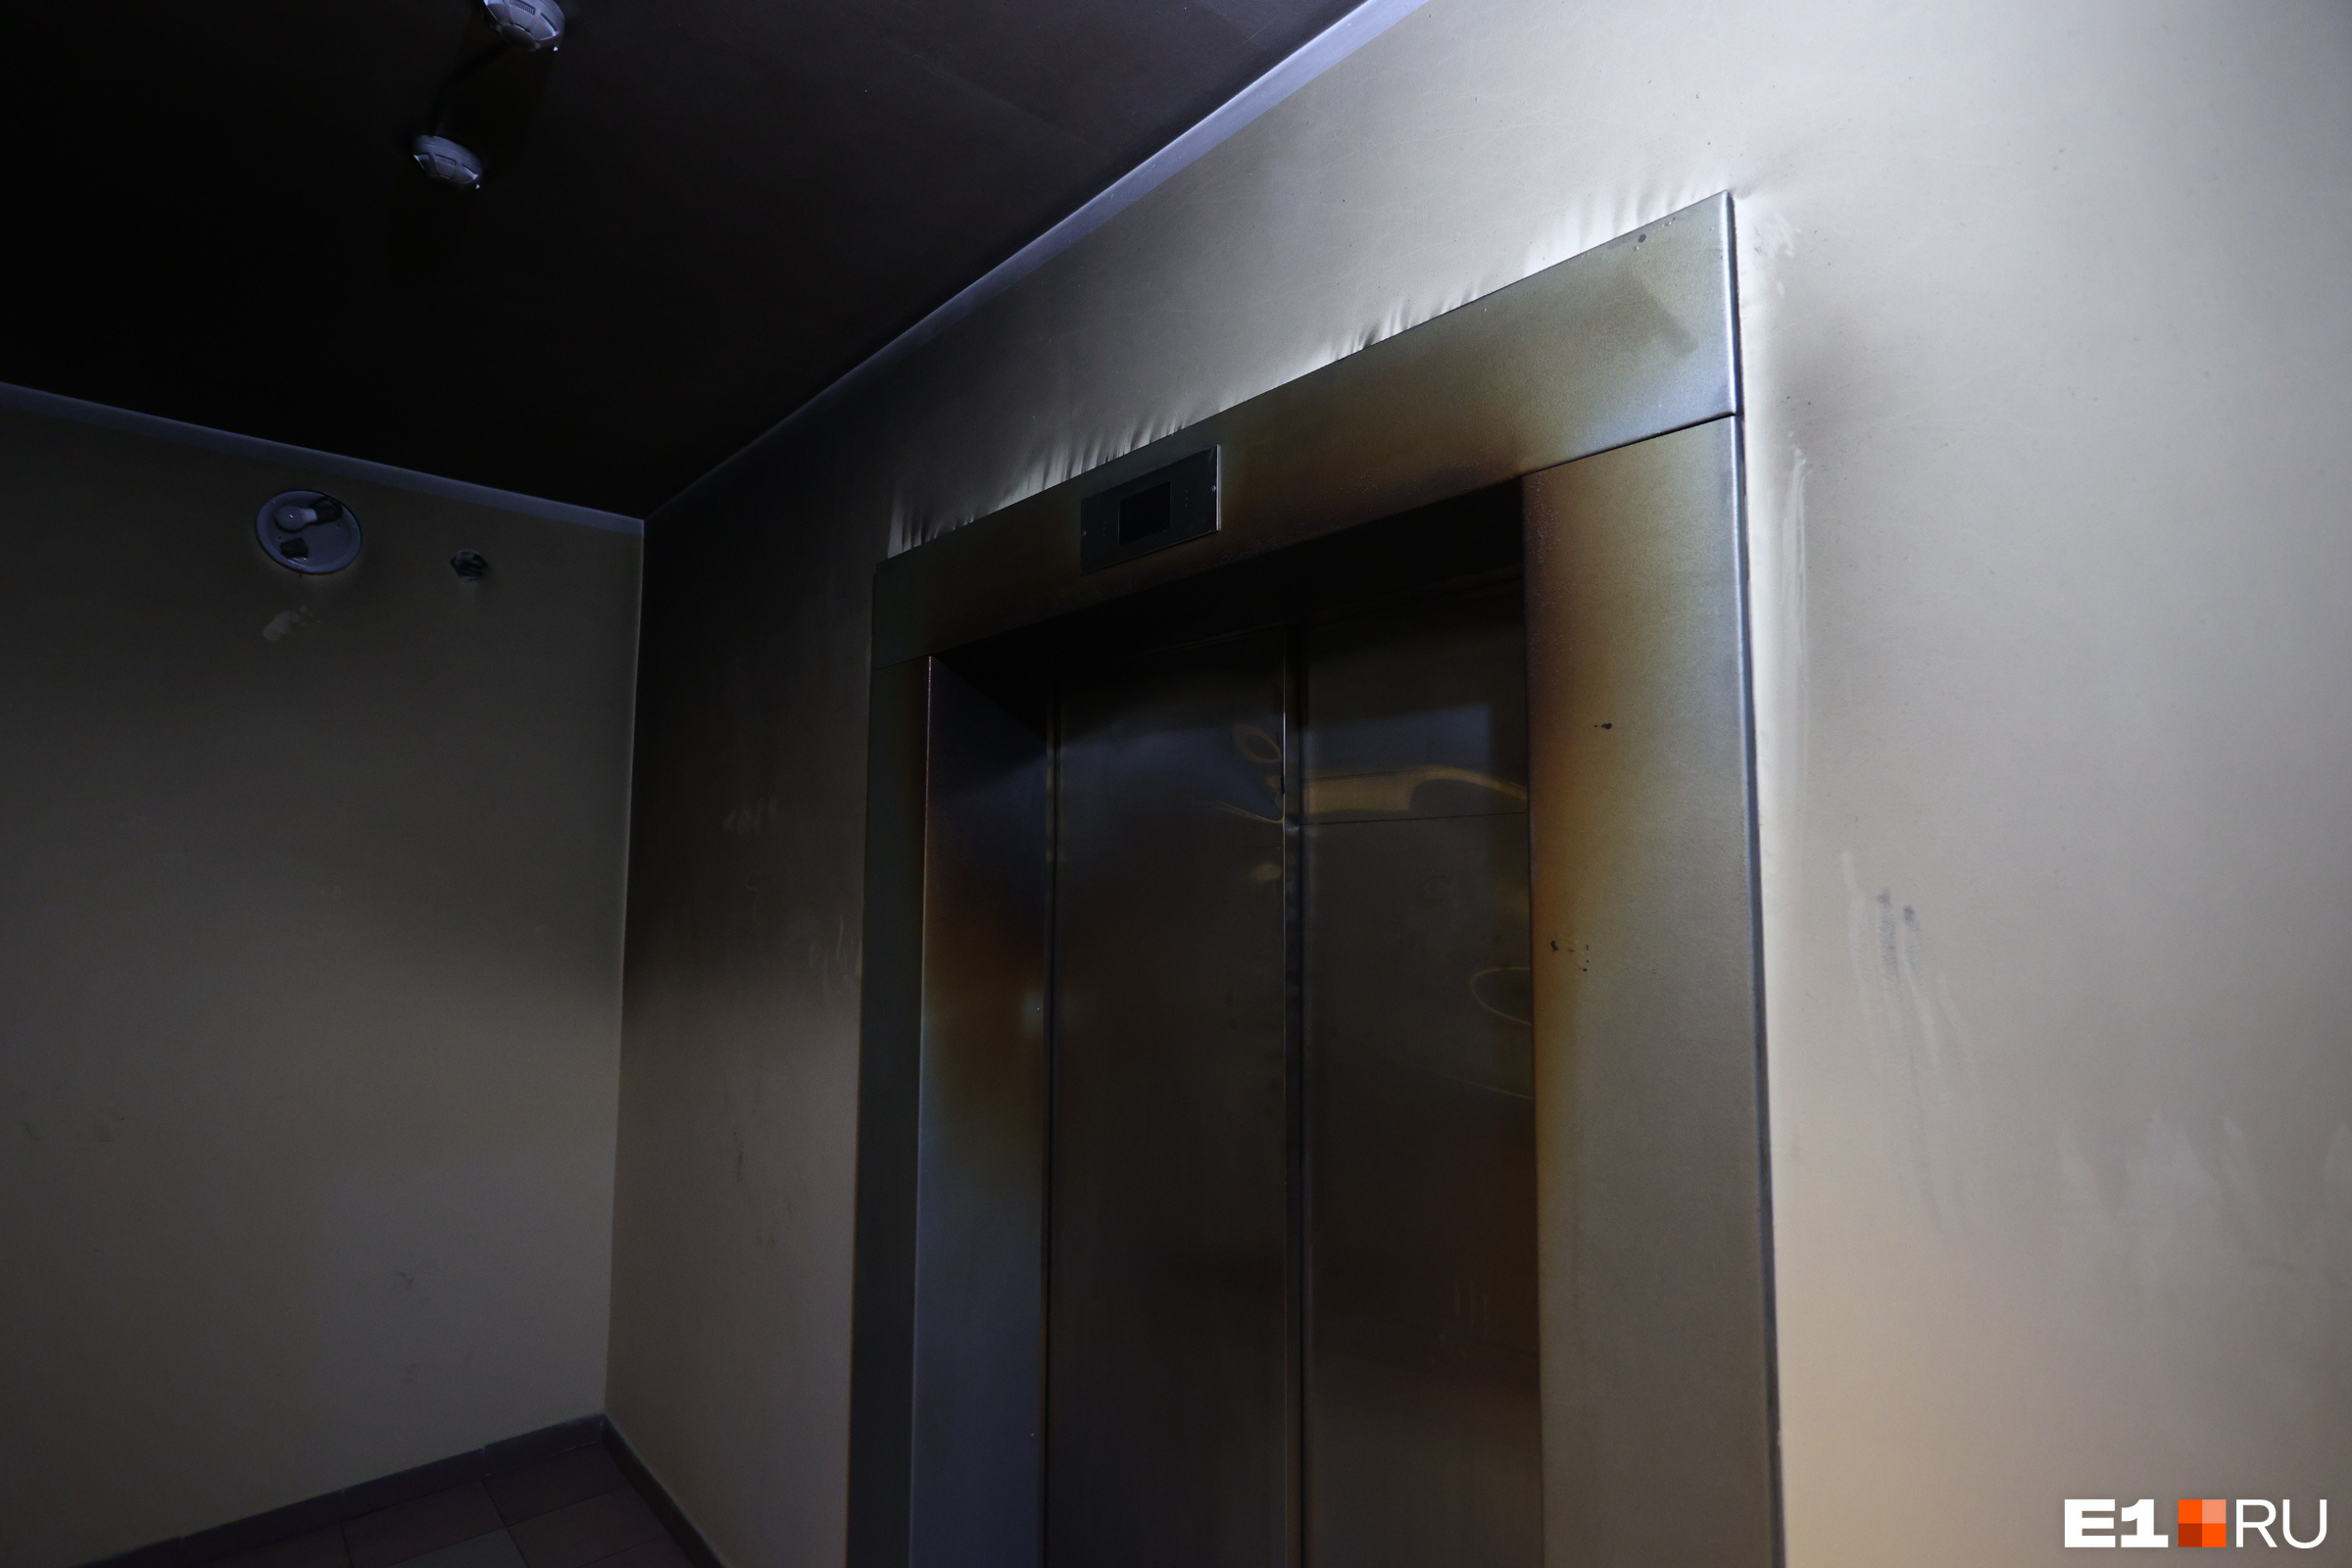 Чтобы отремонтировать лифт, нужно общее собрание жильцов дома, а еще их согласие. По одному из двух подъемников решение чинить уже принято